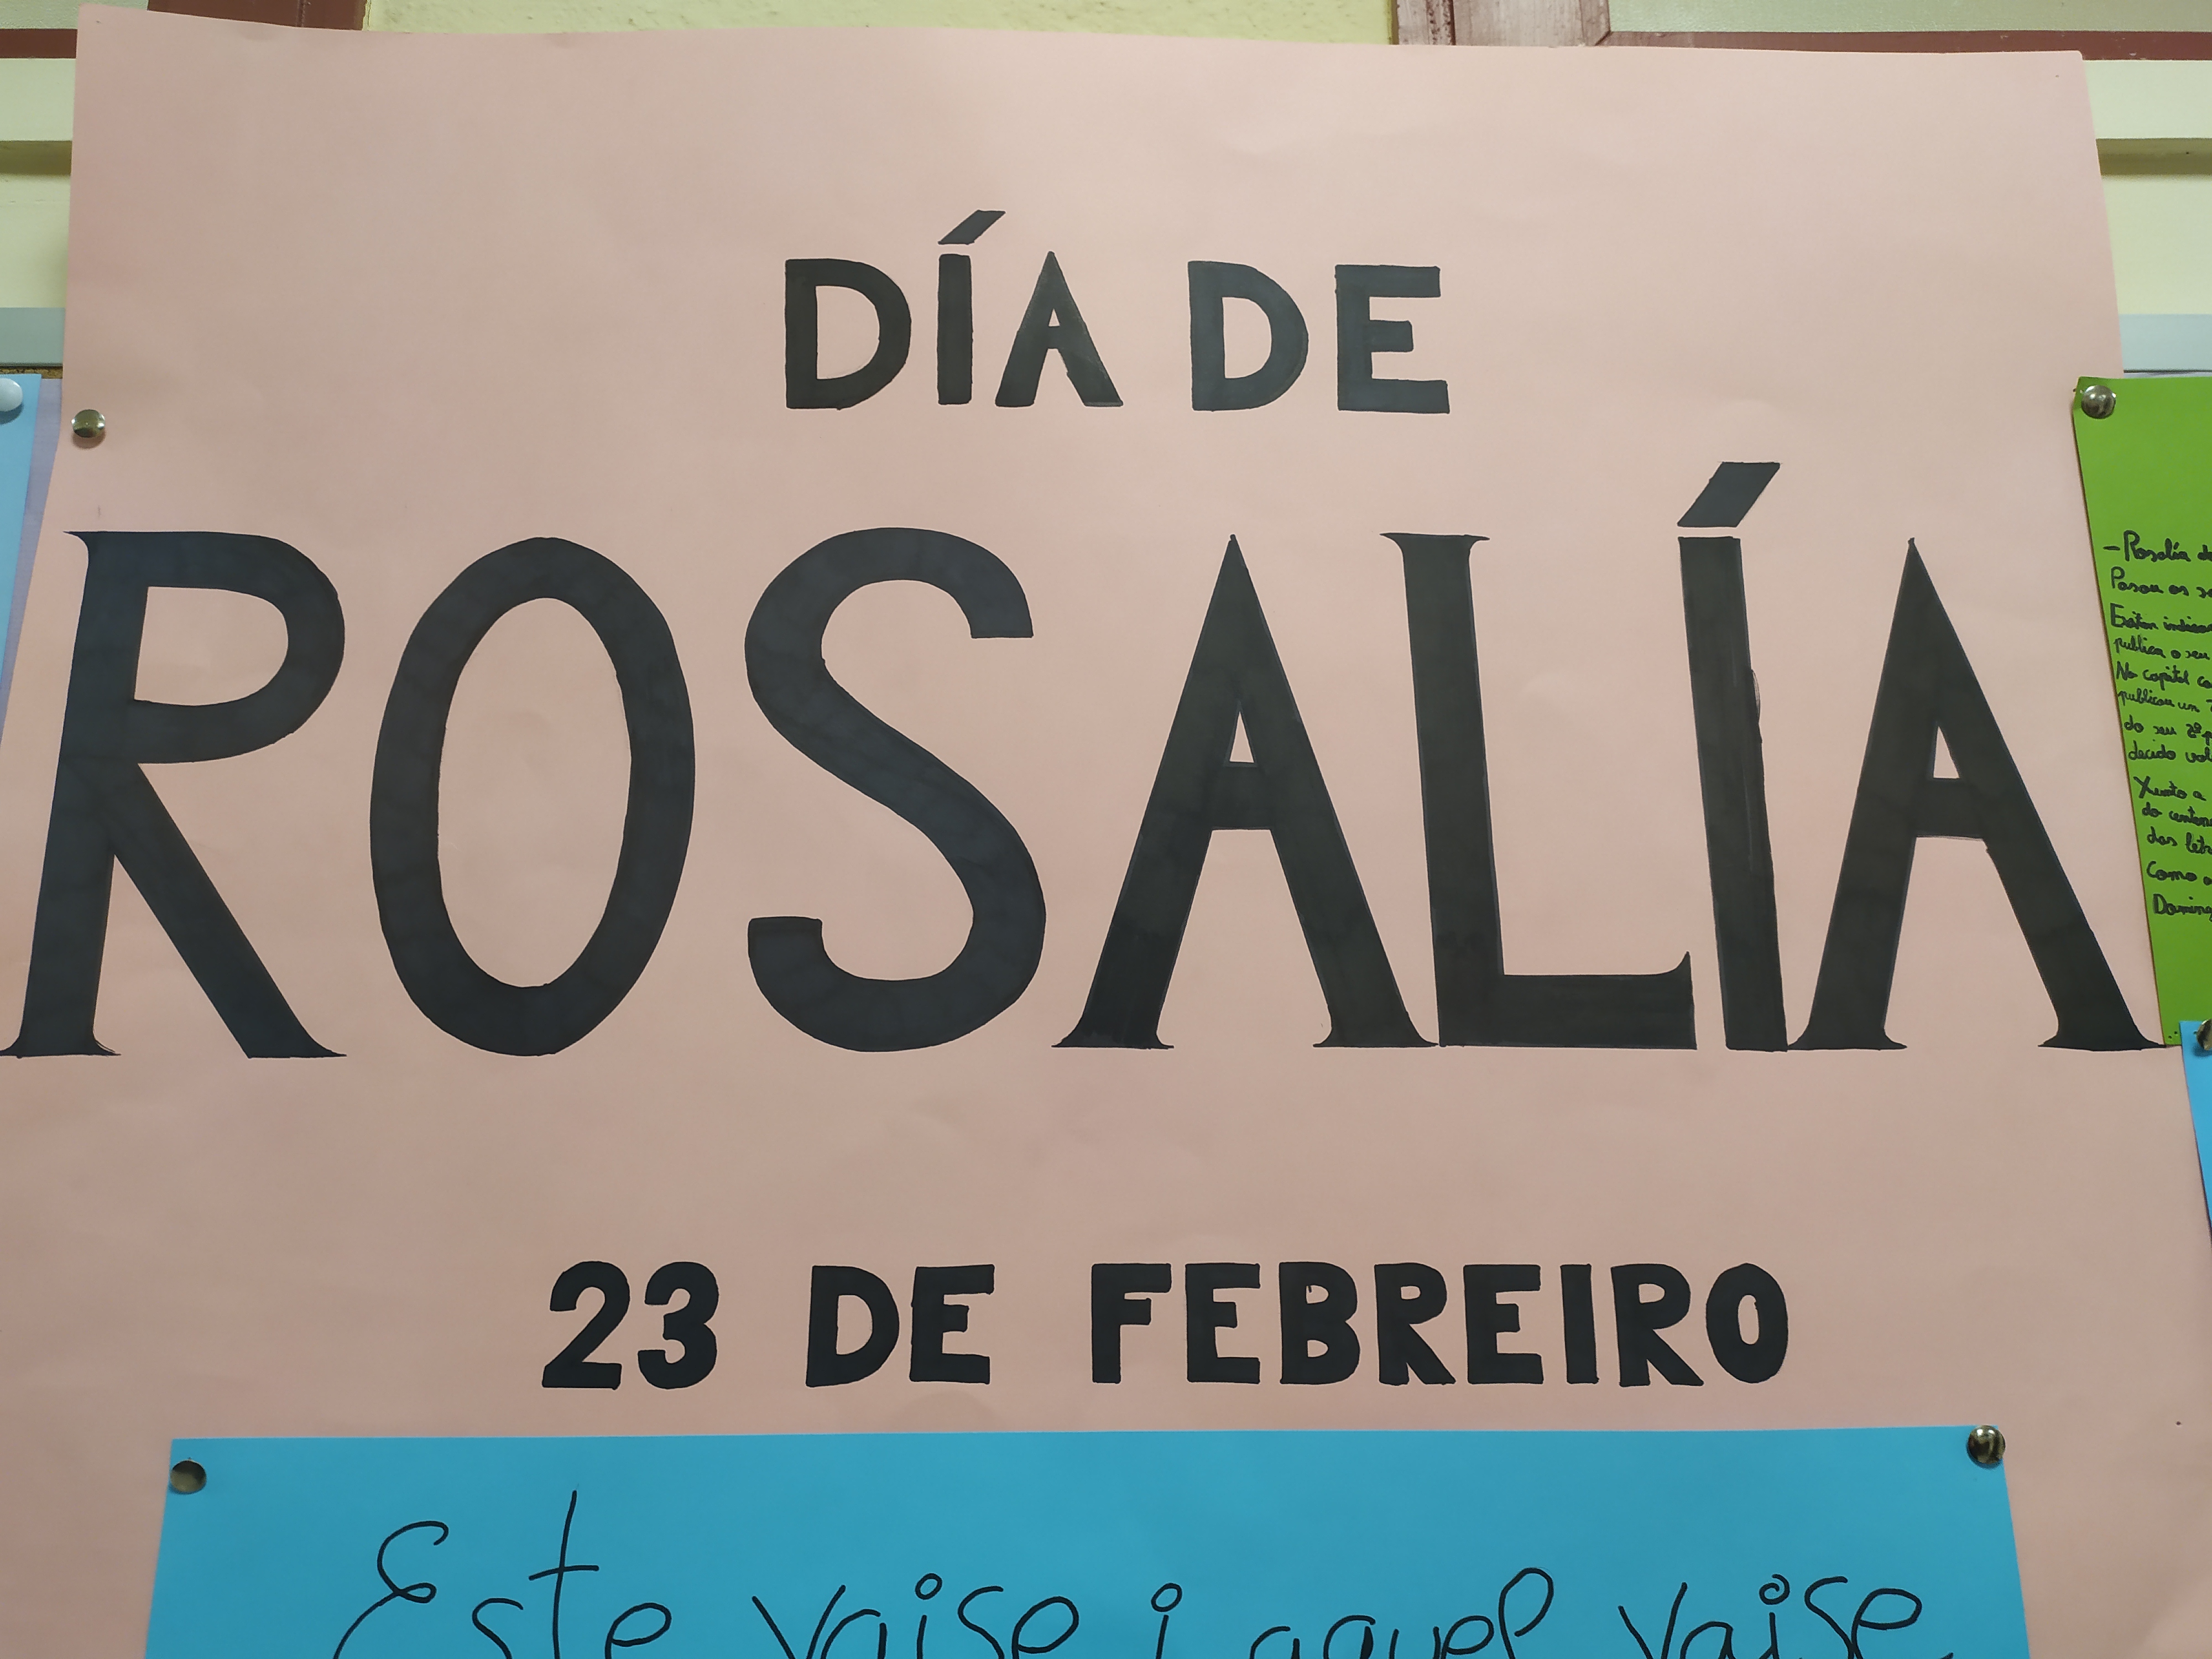 Día de Rosalía de Castro